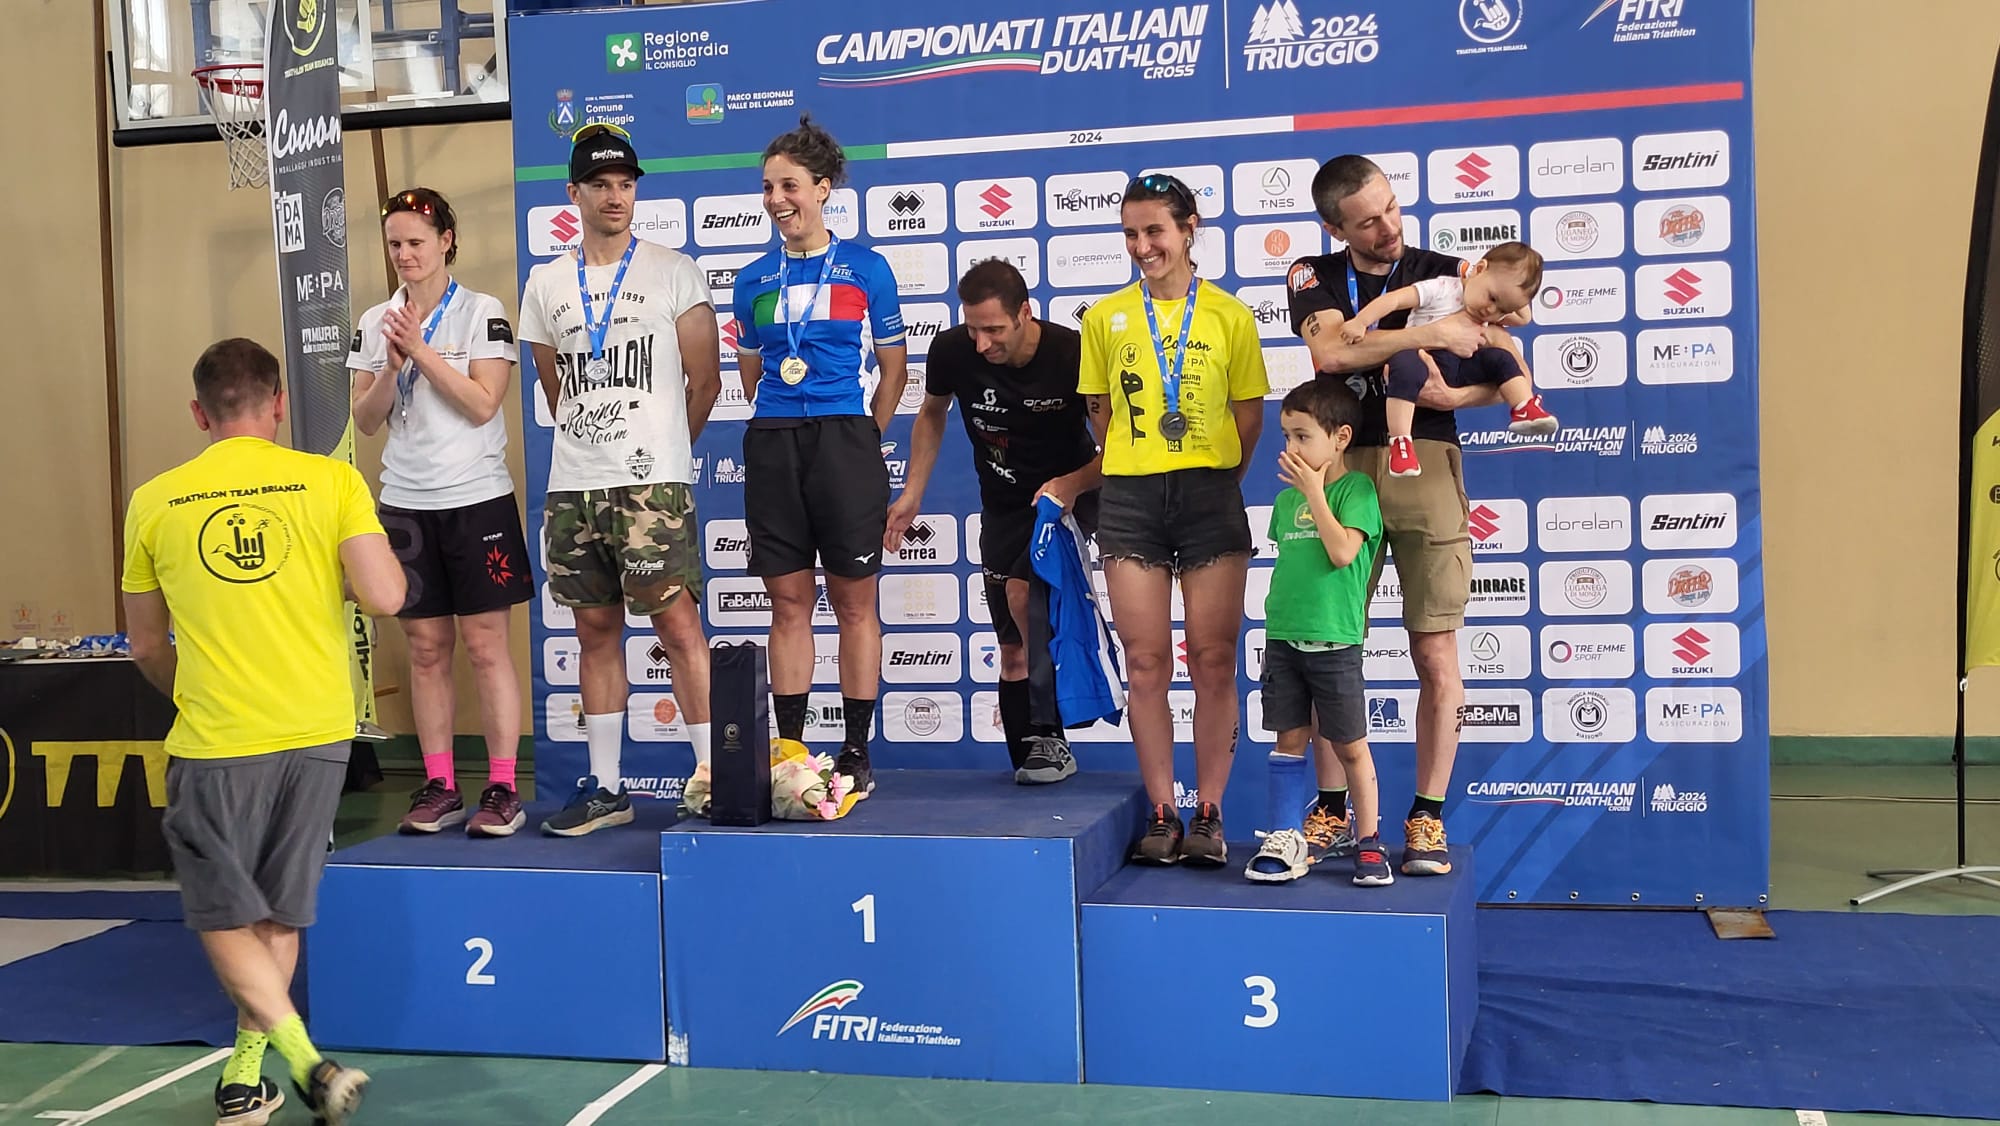 1° tappa circuito cross: con i Campionati Italiani di duathlon cross a Triuggio, il granbiketeam si posiziona gia’ in vetta